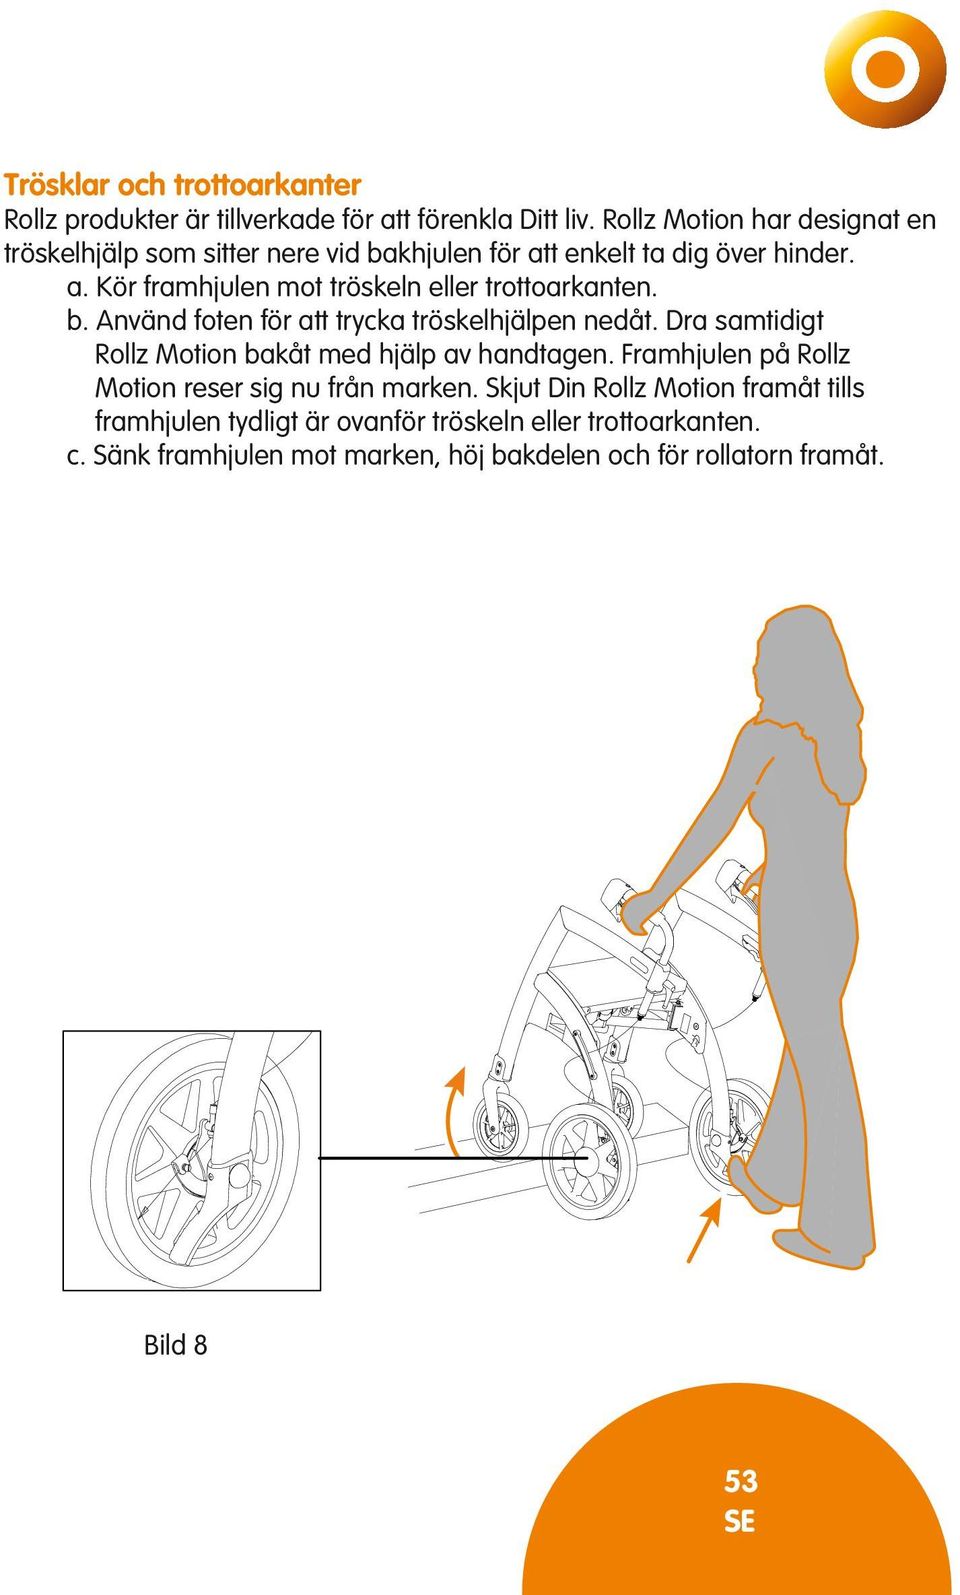 b. Använd foten för att trycka tröskelhjälpen nedåt. Dra samtidigt Rollz Motion bakåt med hjälp av handtagen.